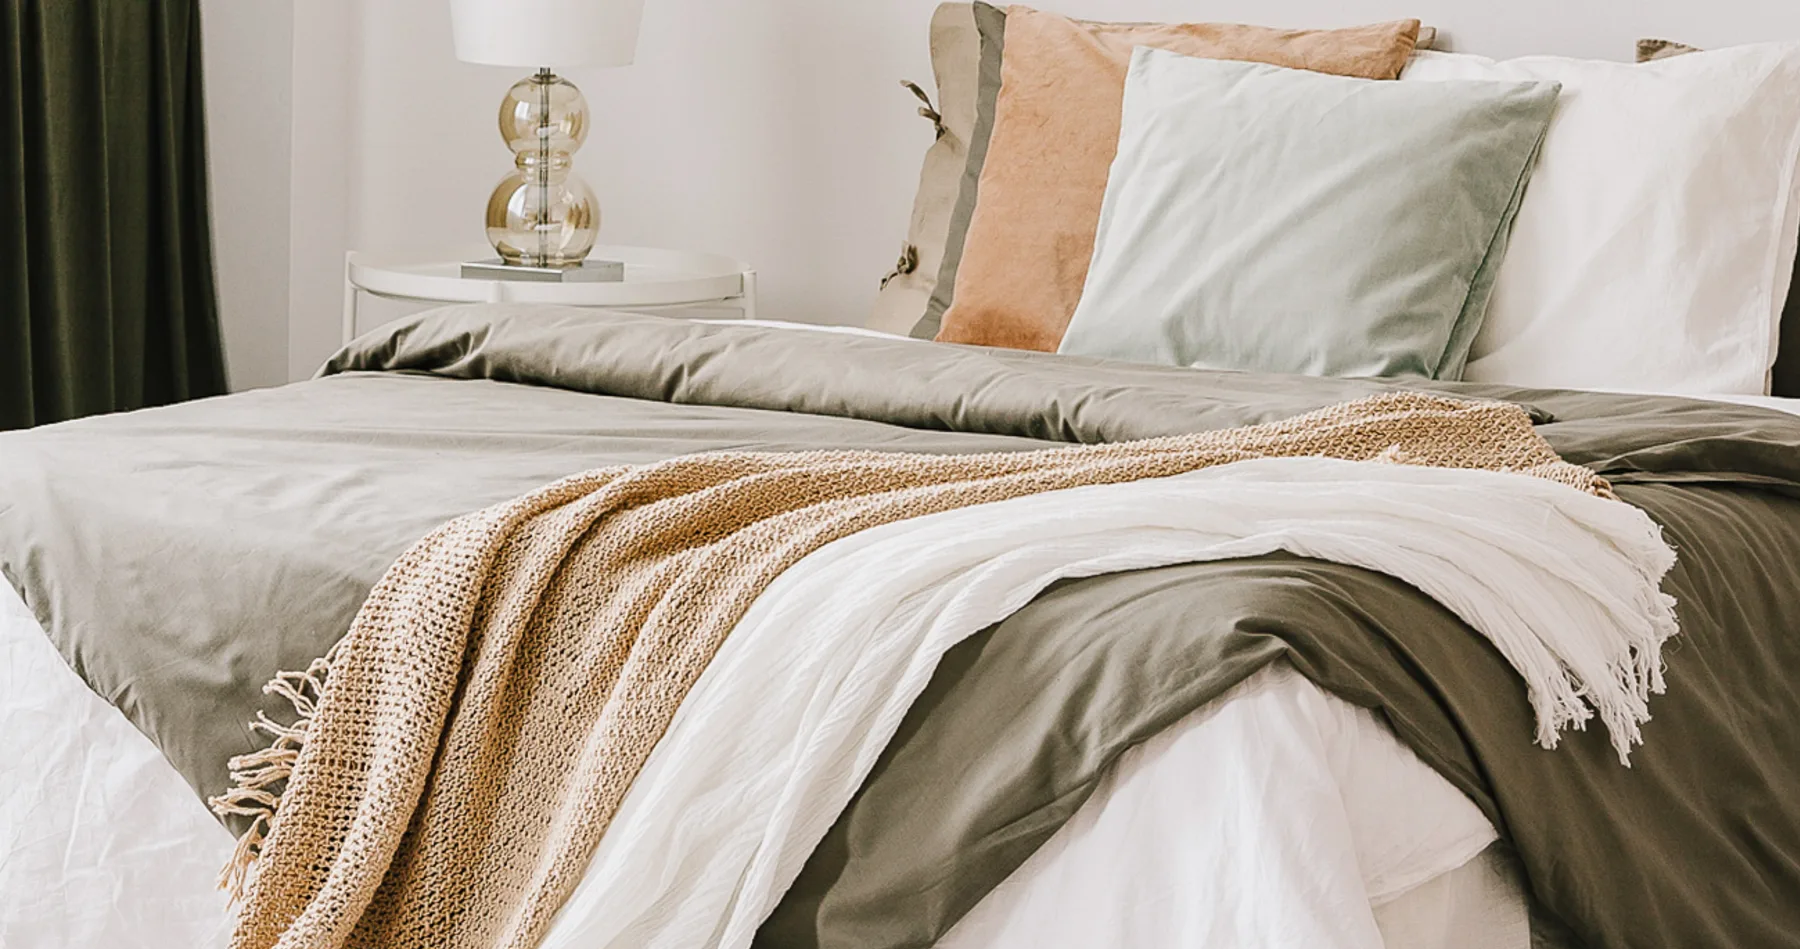 Sleep Like a Swede: 7 Cozy Bedroom Hacks From Scandinavia